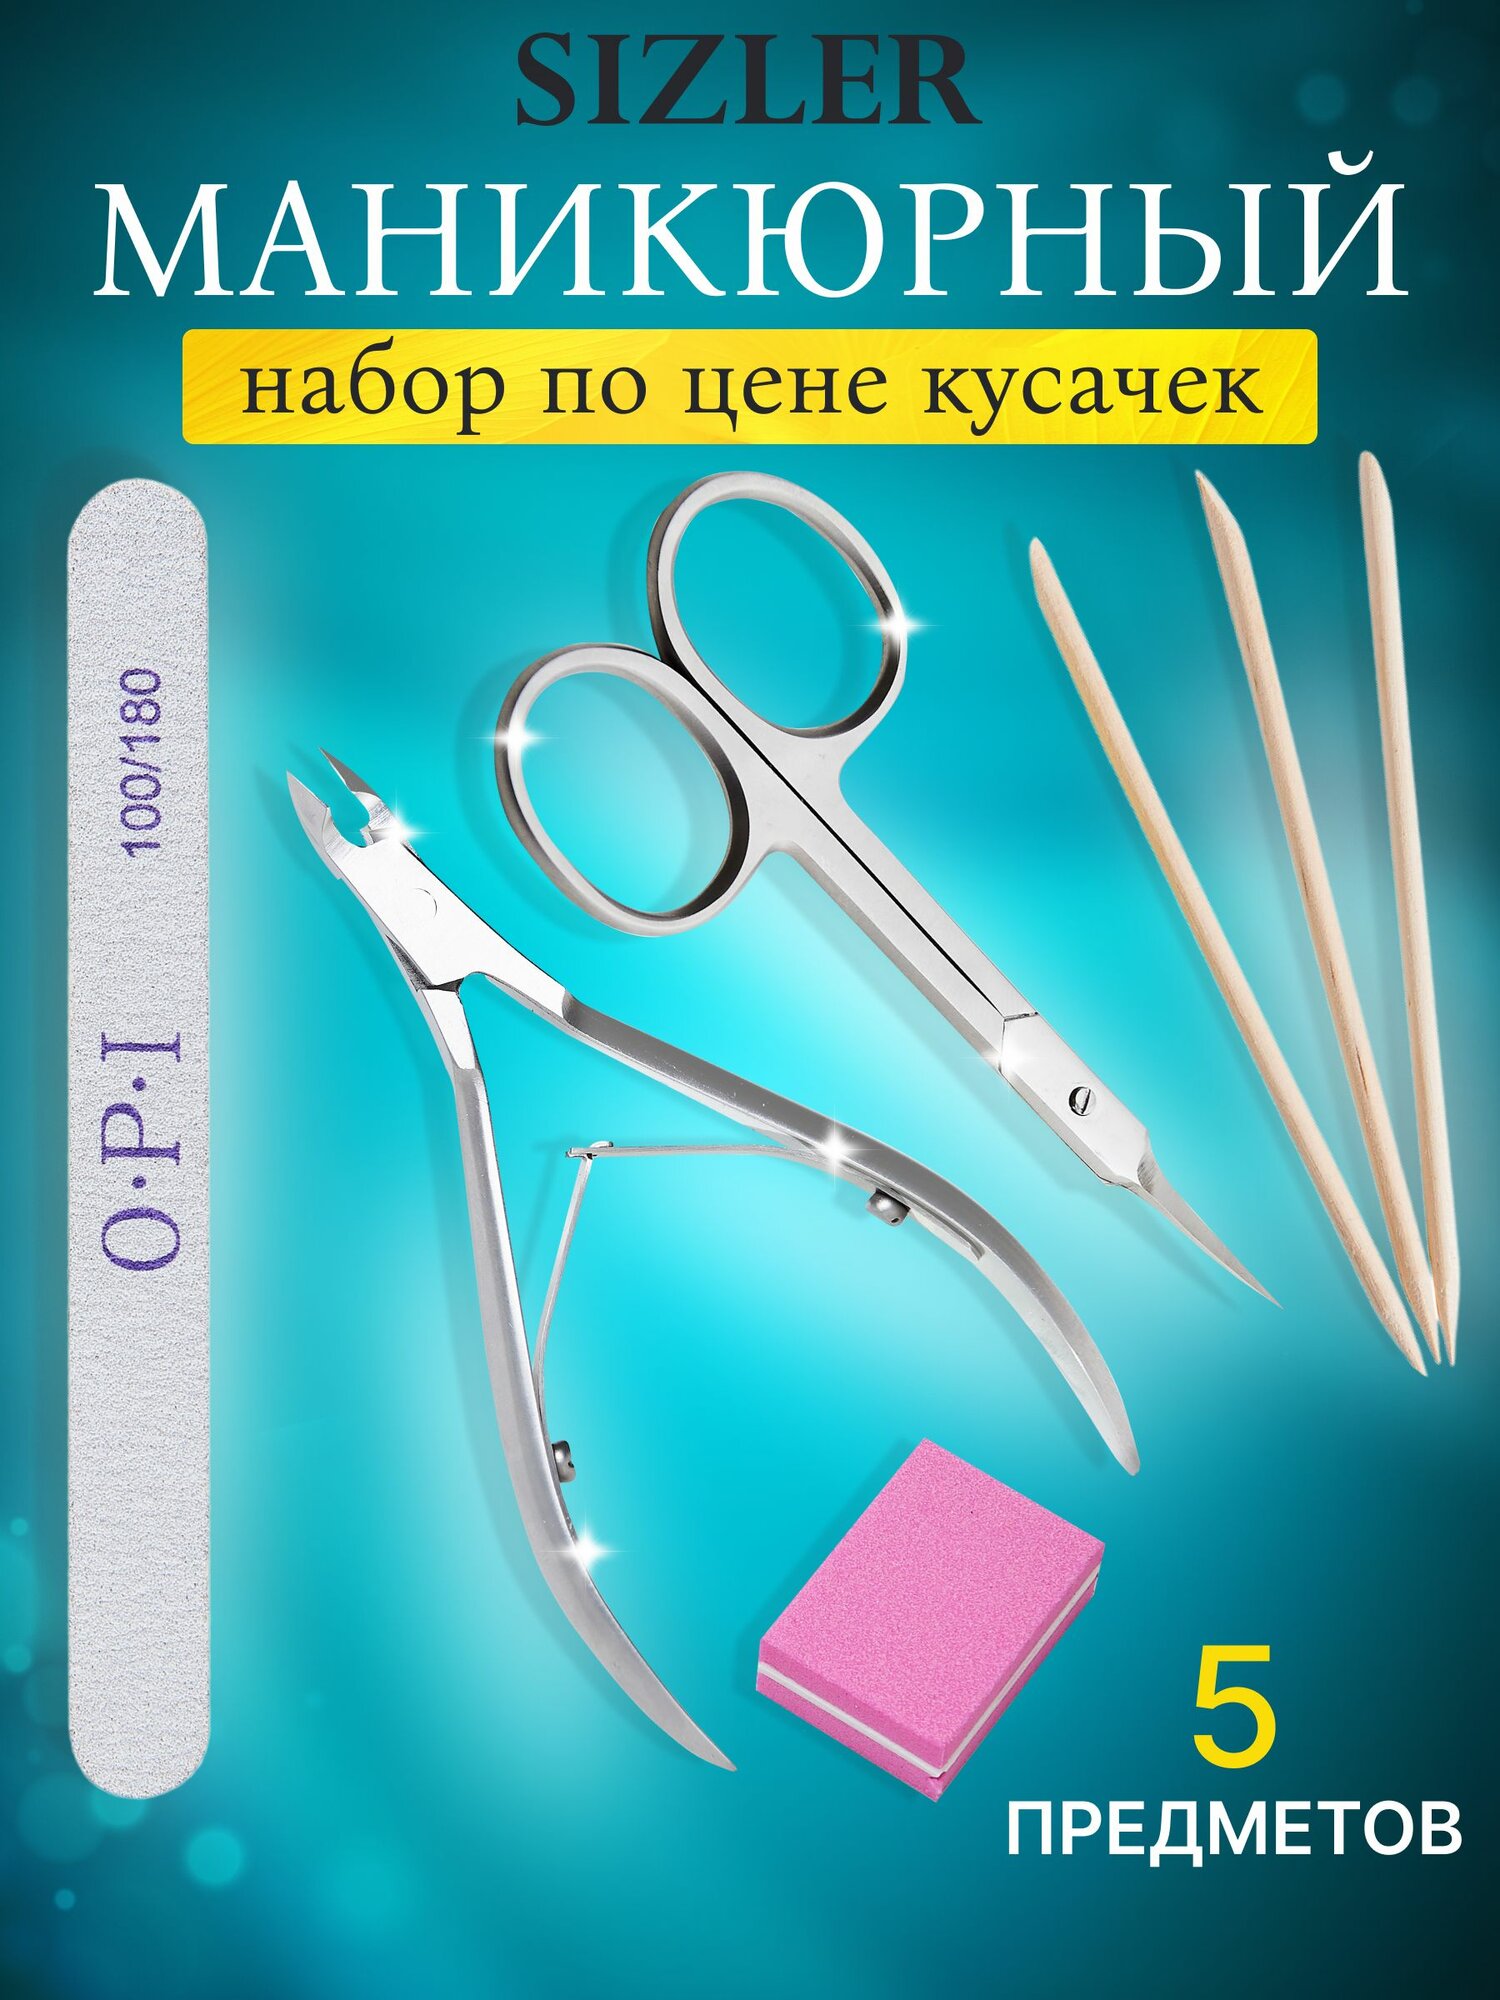 Набор маникюрный SIZLER PROFESSIONAL ножницы и кусачки для кутикулы